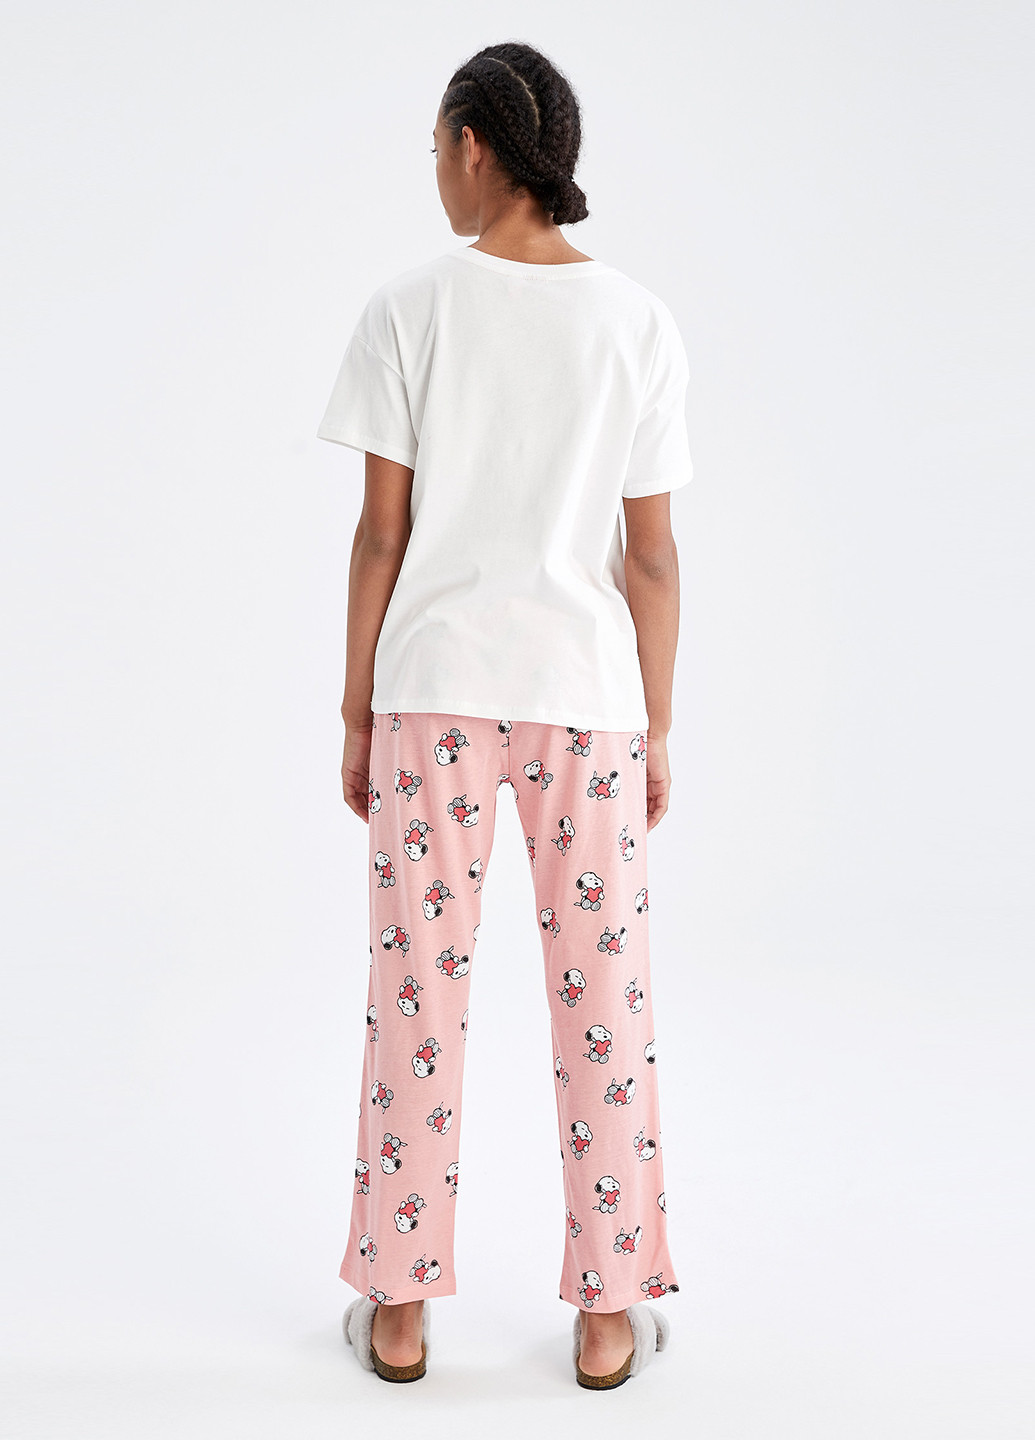 Розовая всесезон пижама (футболка, брюки) футболка + брюки DeFacto